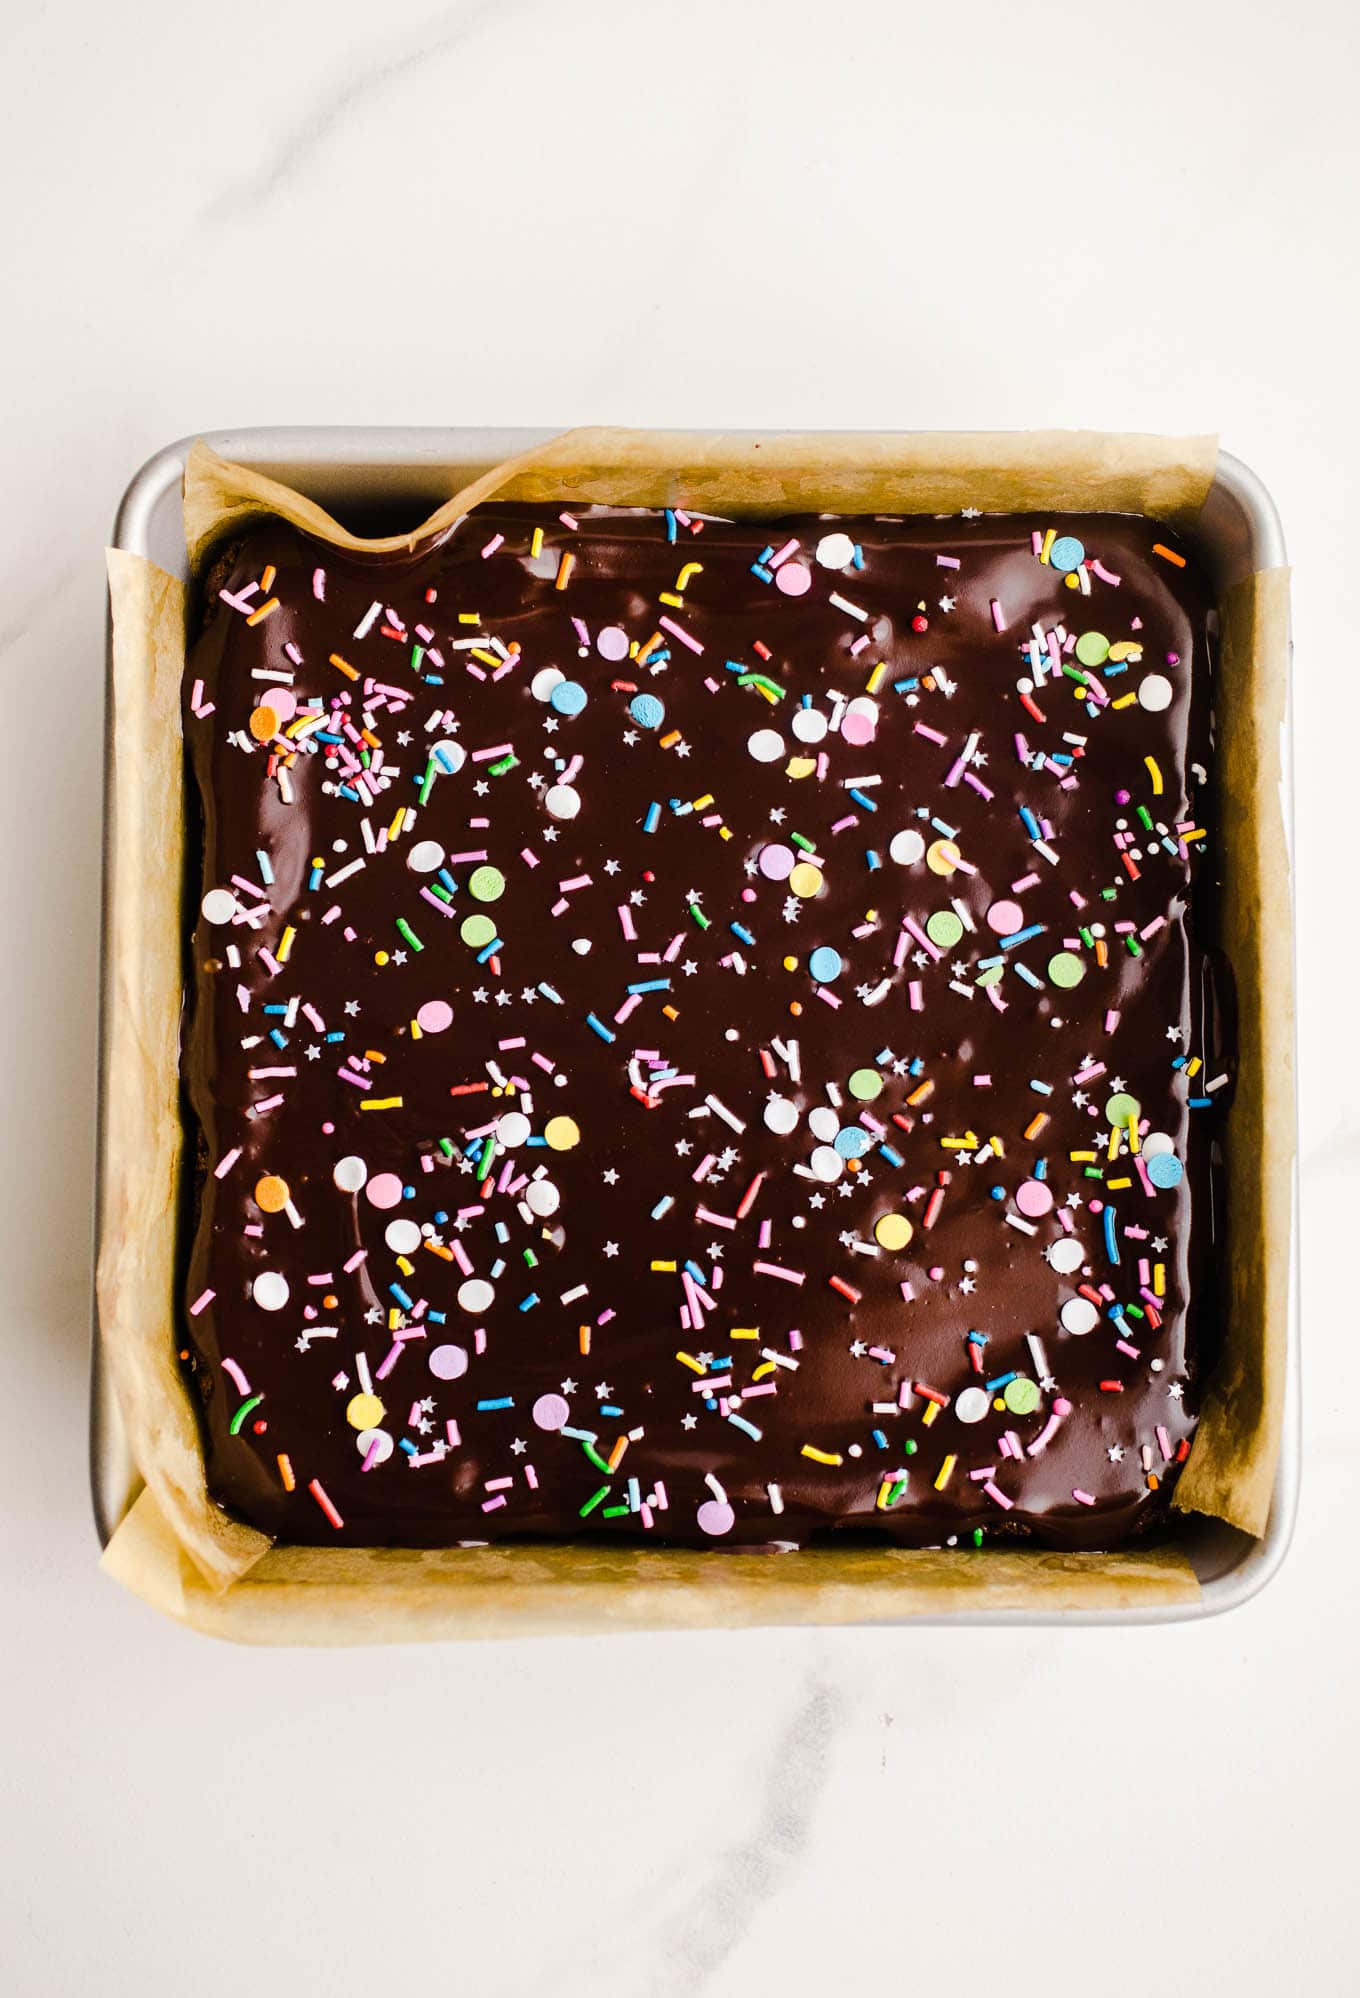 Kosmische Brownies mit Schokoladensauce und Streuseln